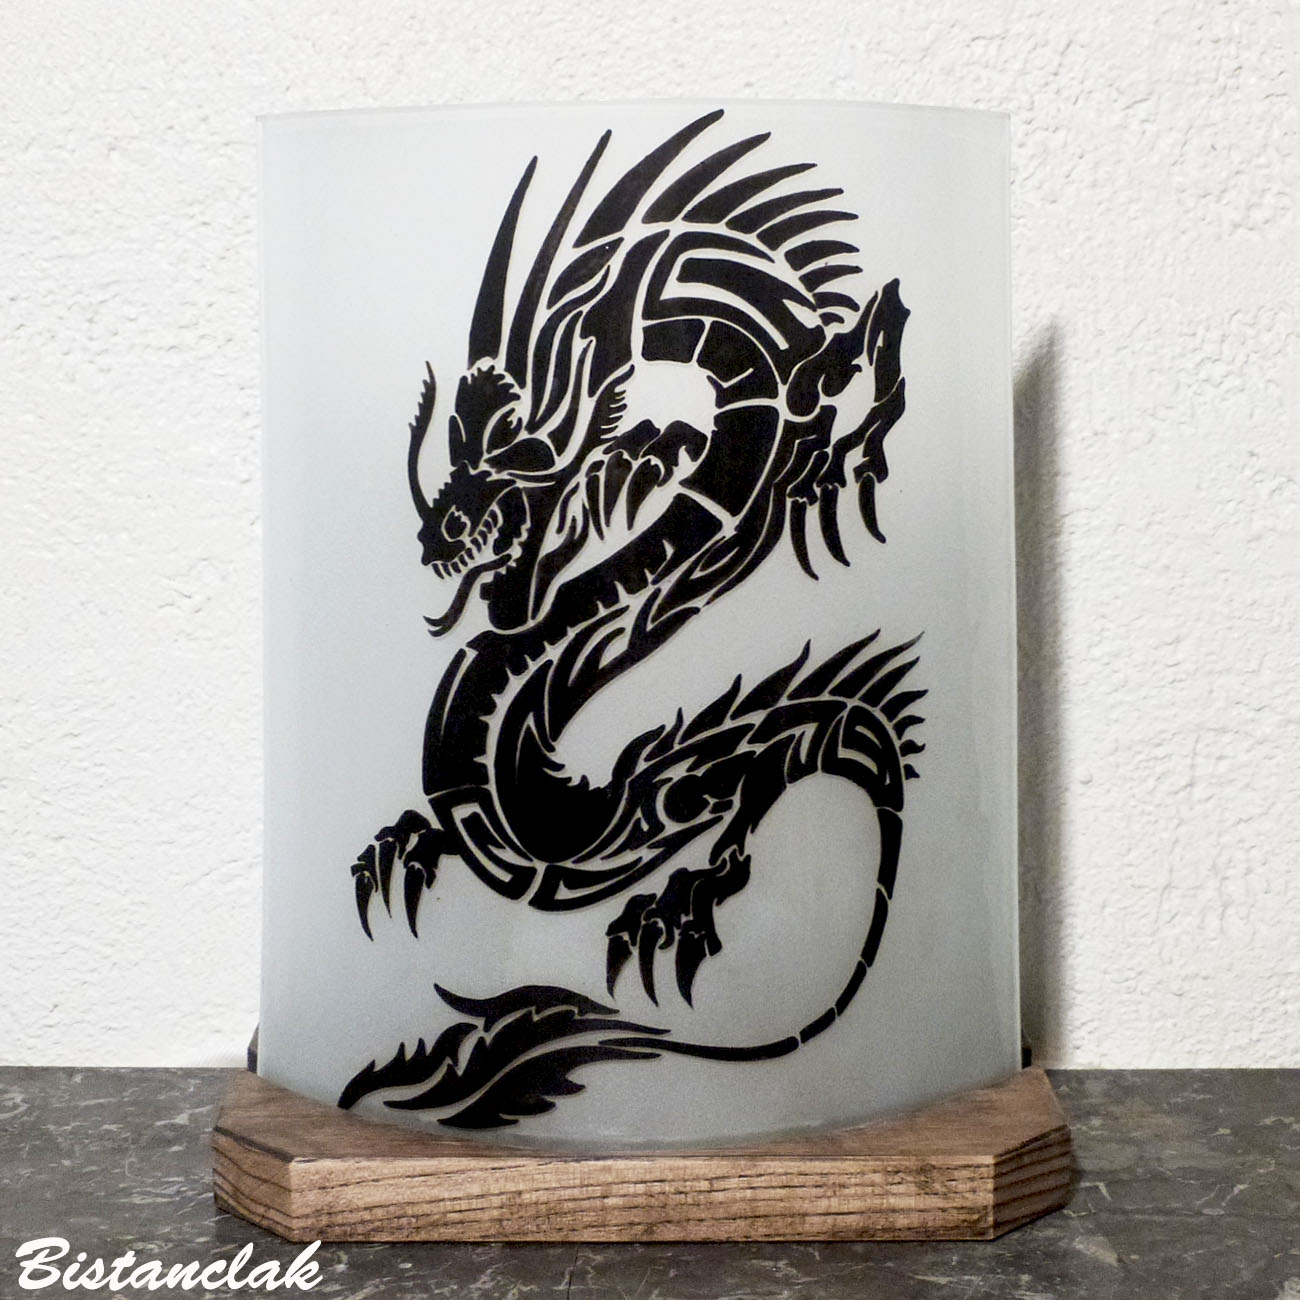 Lampe decorative blanche au dessin d un dragon noir vendue en ligen sur notre site